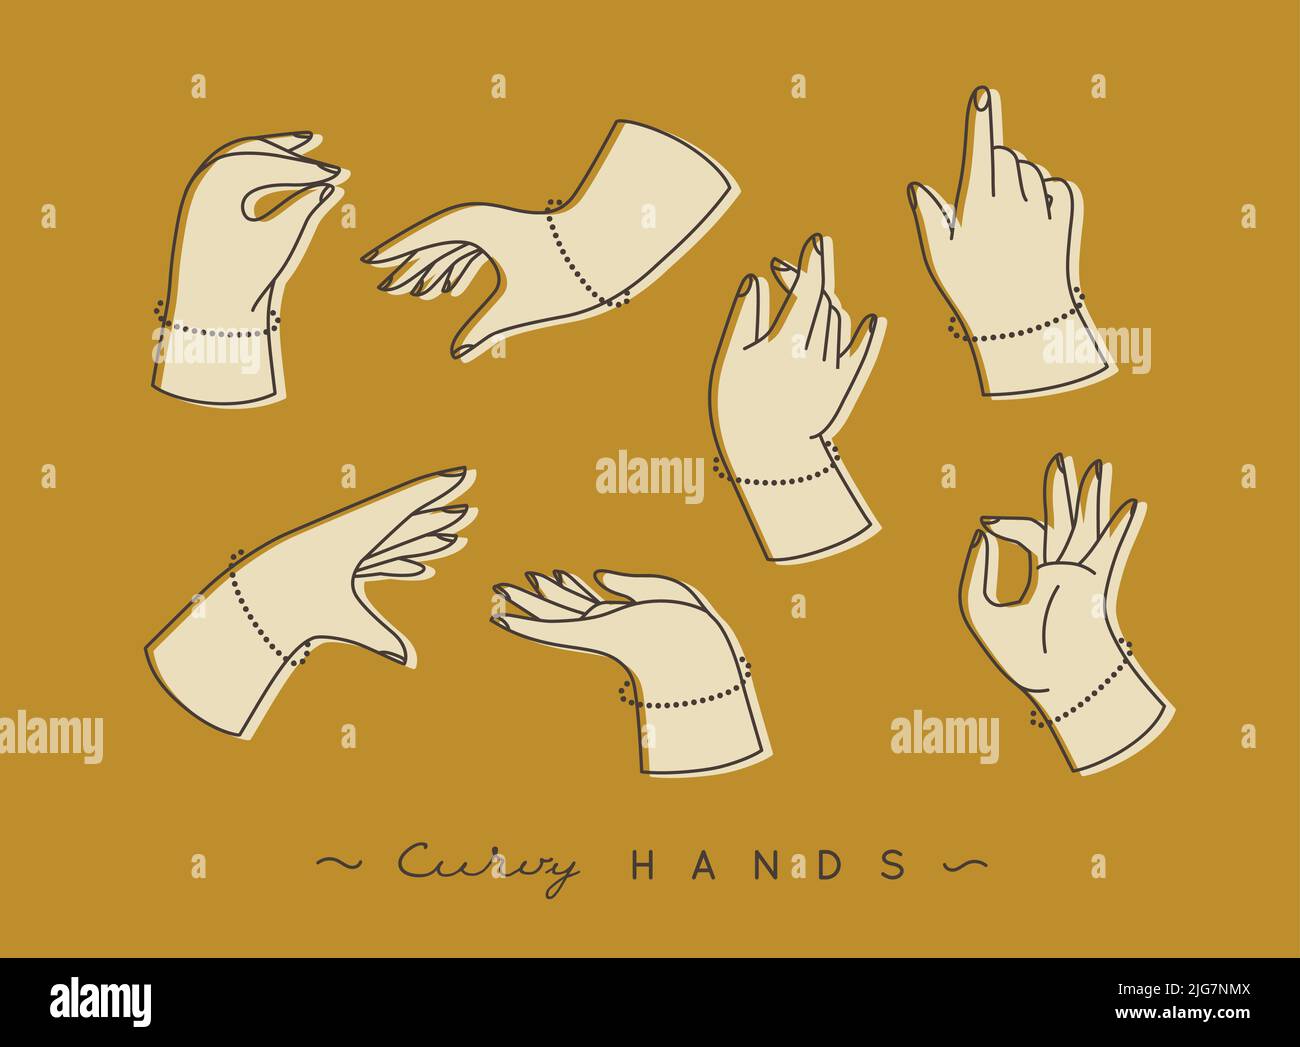 Jeu de mains courbes avec des icônes de doigts dans différentes positions dessiner avec la couleur beige sur fond moutarde Illustration de Vecteur